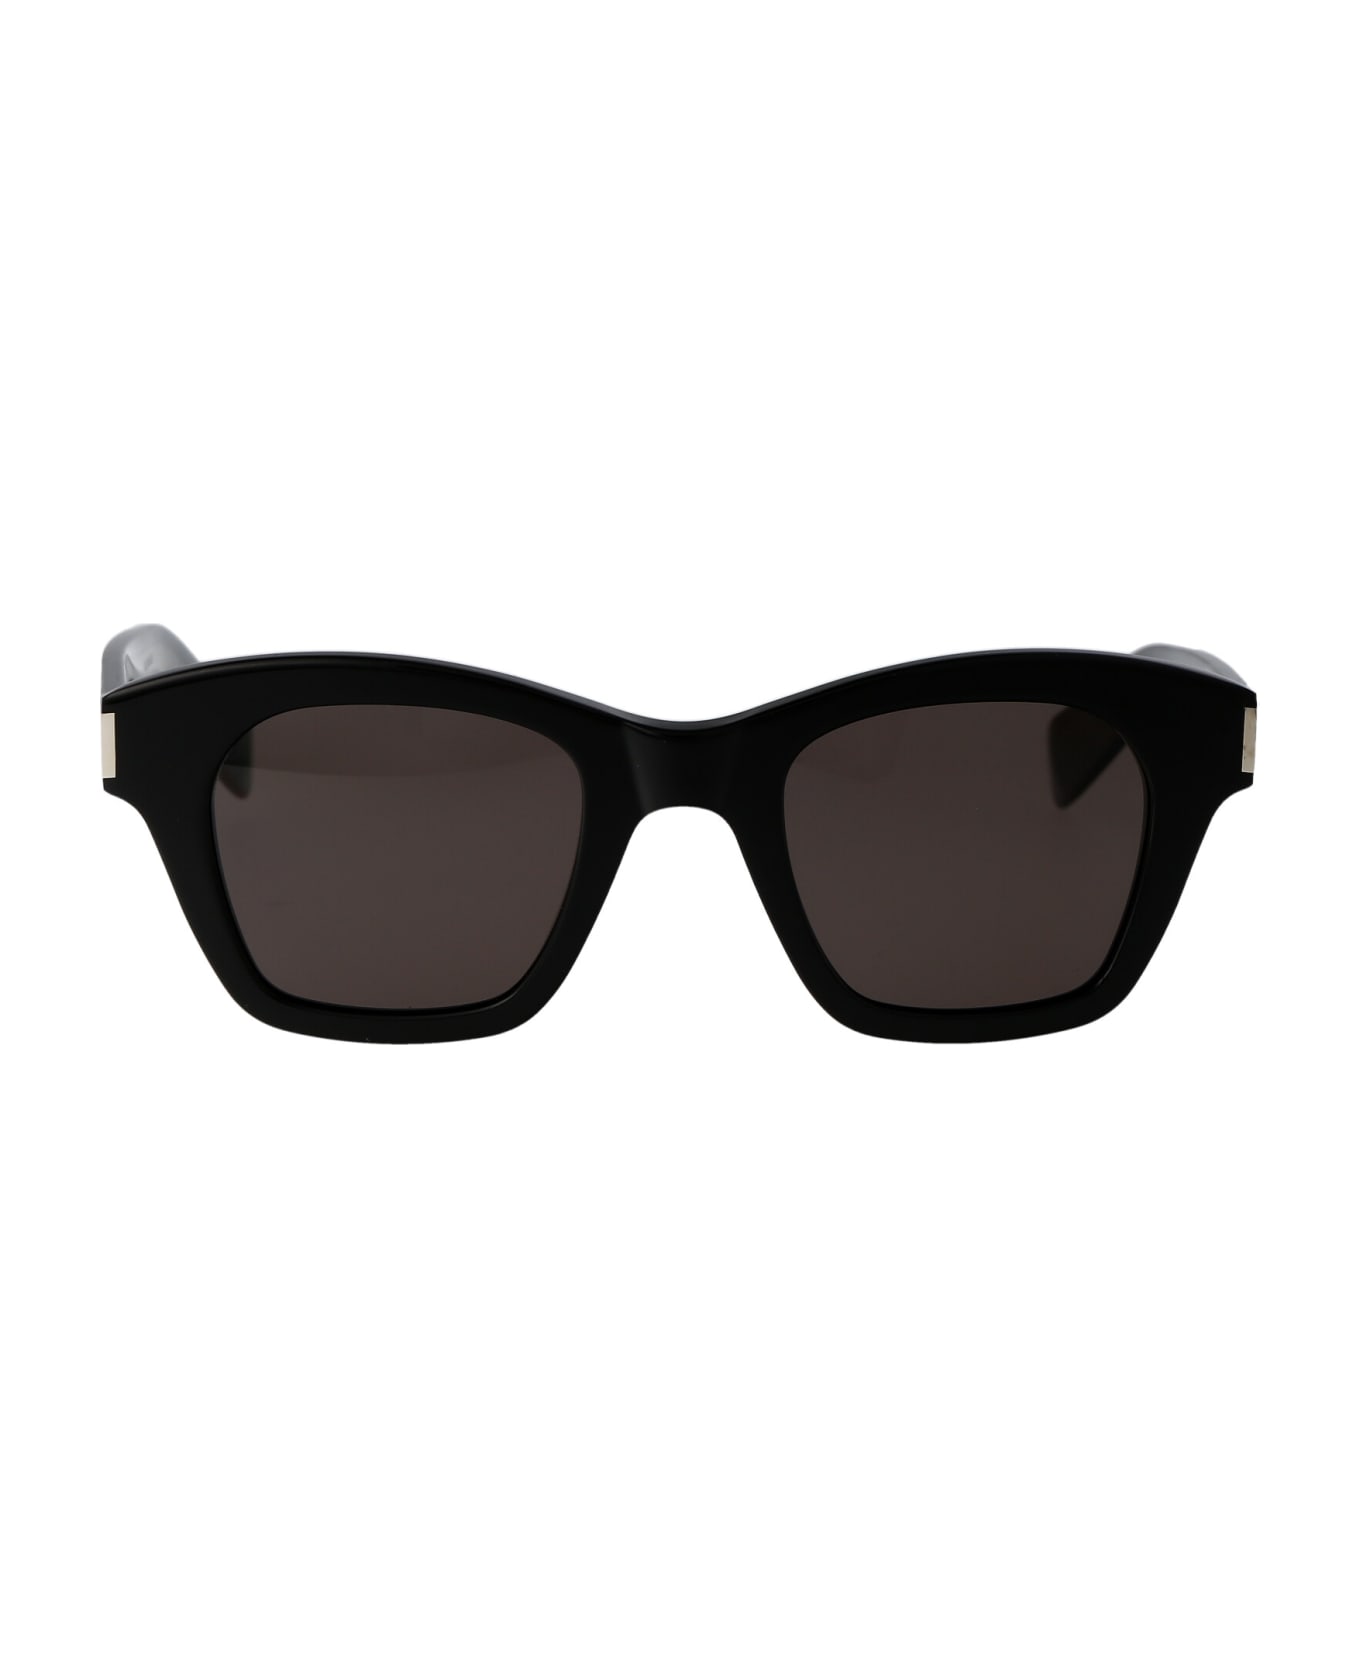 Saint Laurent Eyewear Sl 592 Sunglasses - 001 BLACK BLACK BLACK サングラス